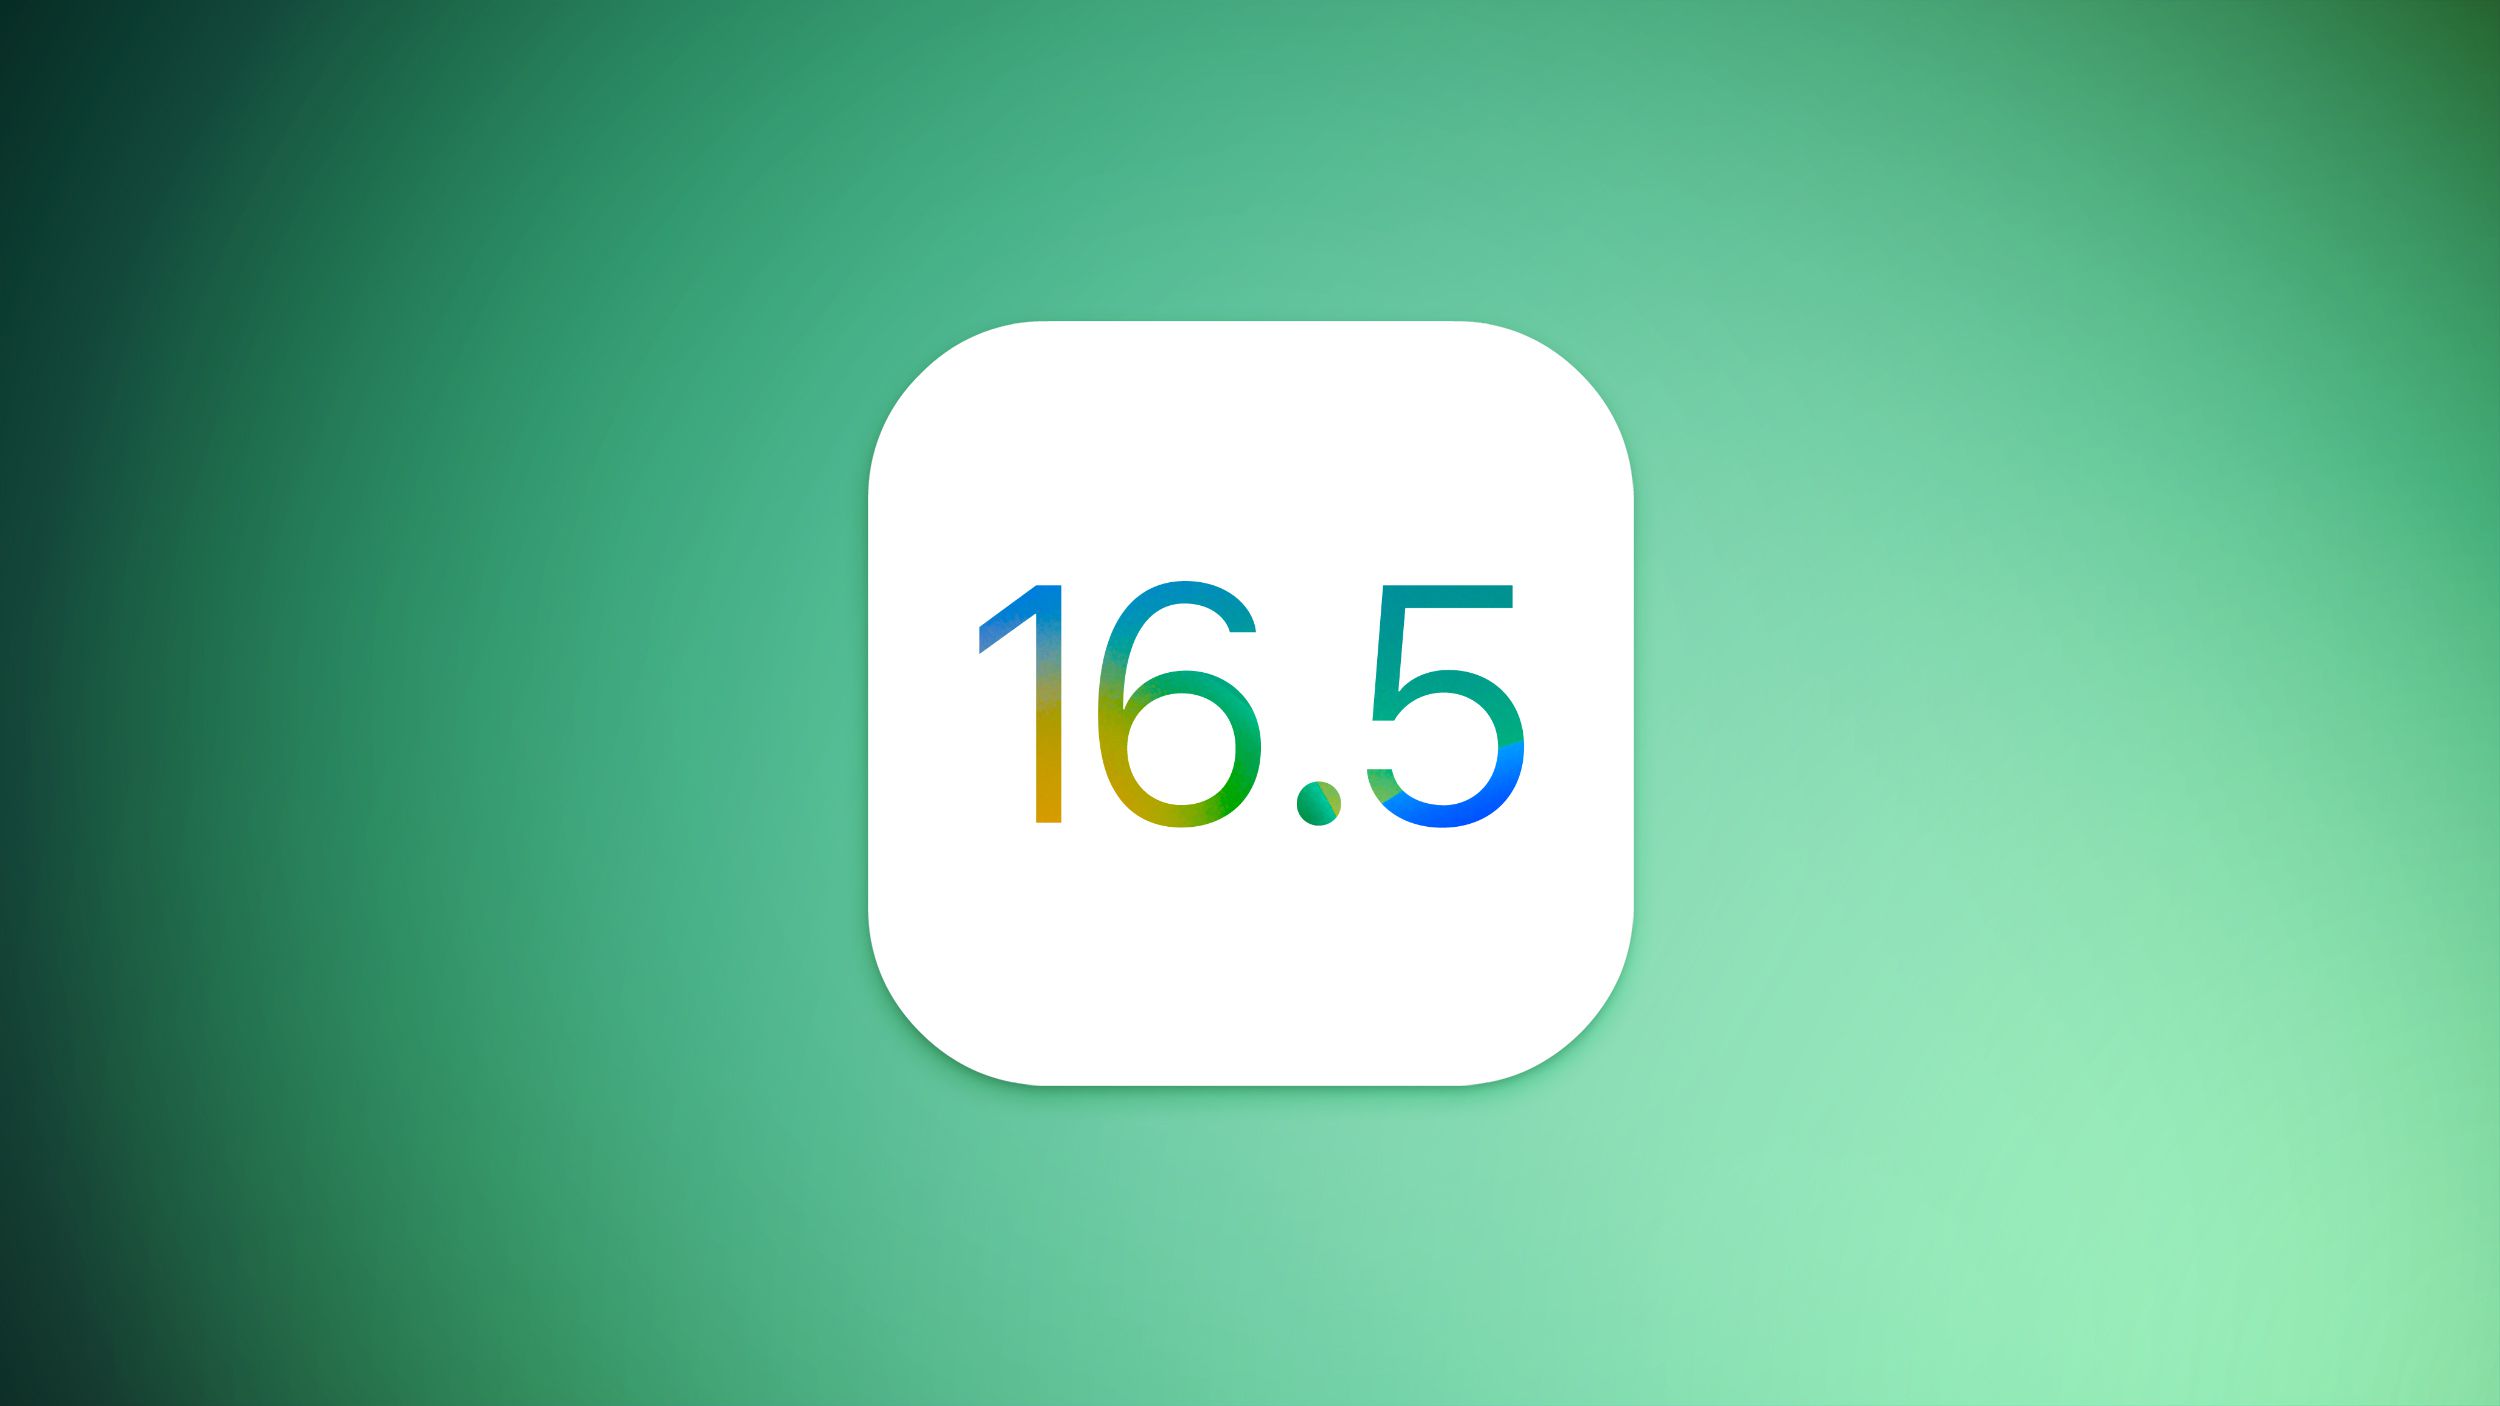 Apple Seeds Cuarta versión beta de iOS 16.5 y iPadOS 16.5 para desarrolladores [Update: Public Beta Available]